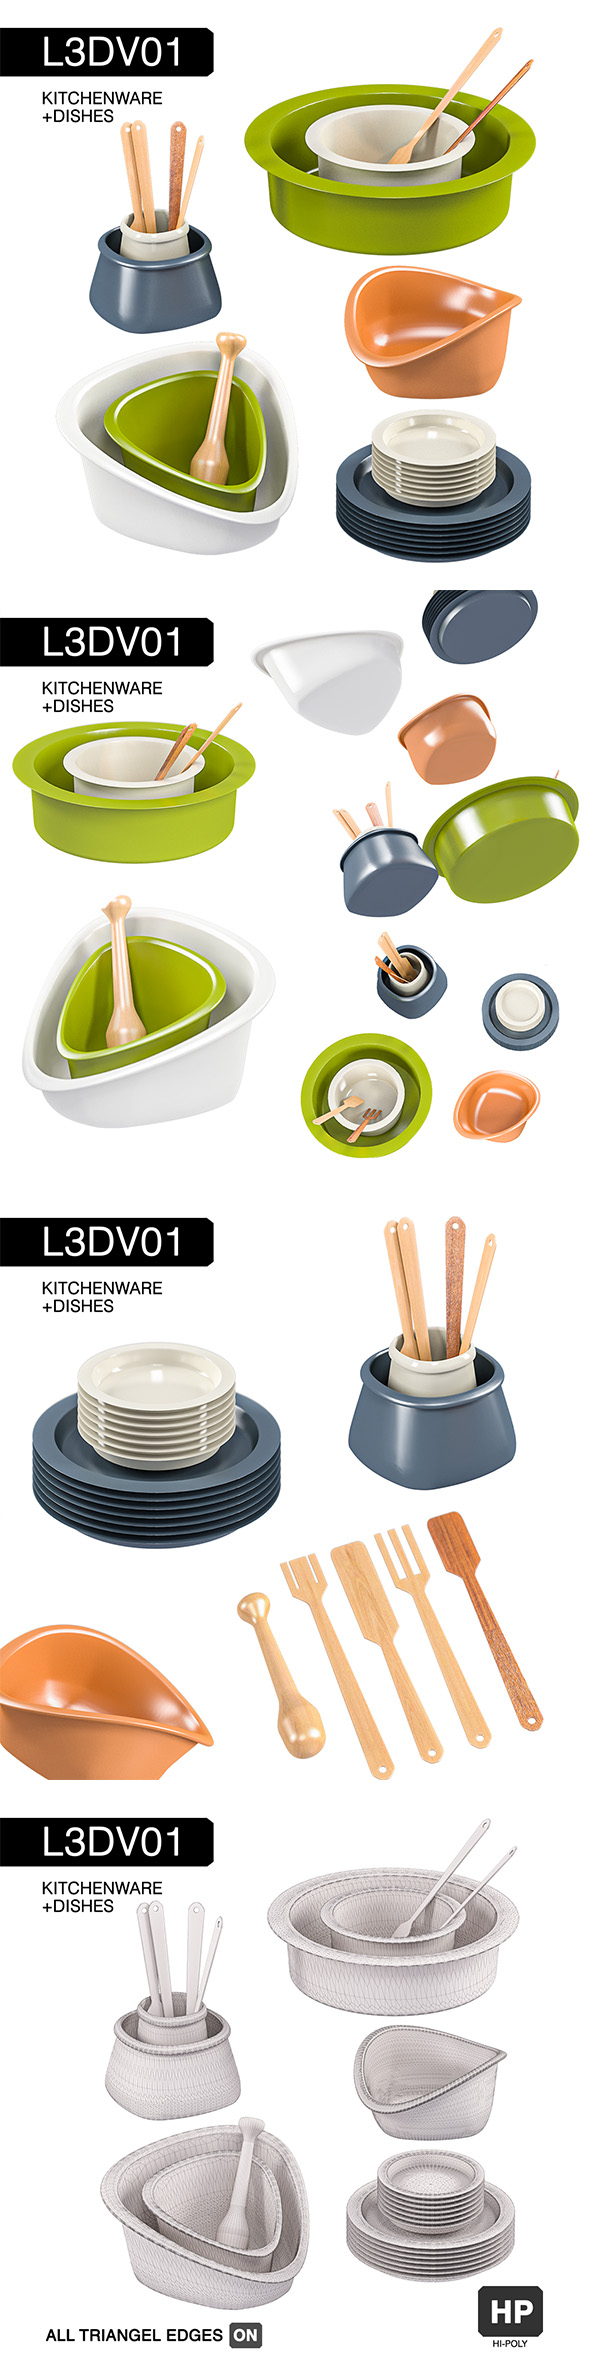 L3DV01G03 - kitchen - 3Docean 31053417